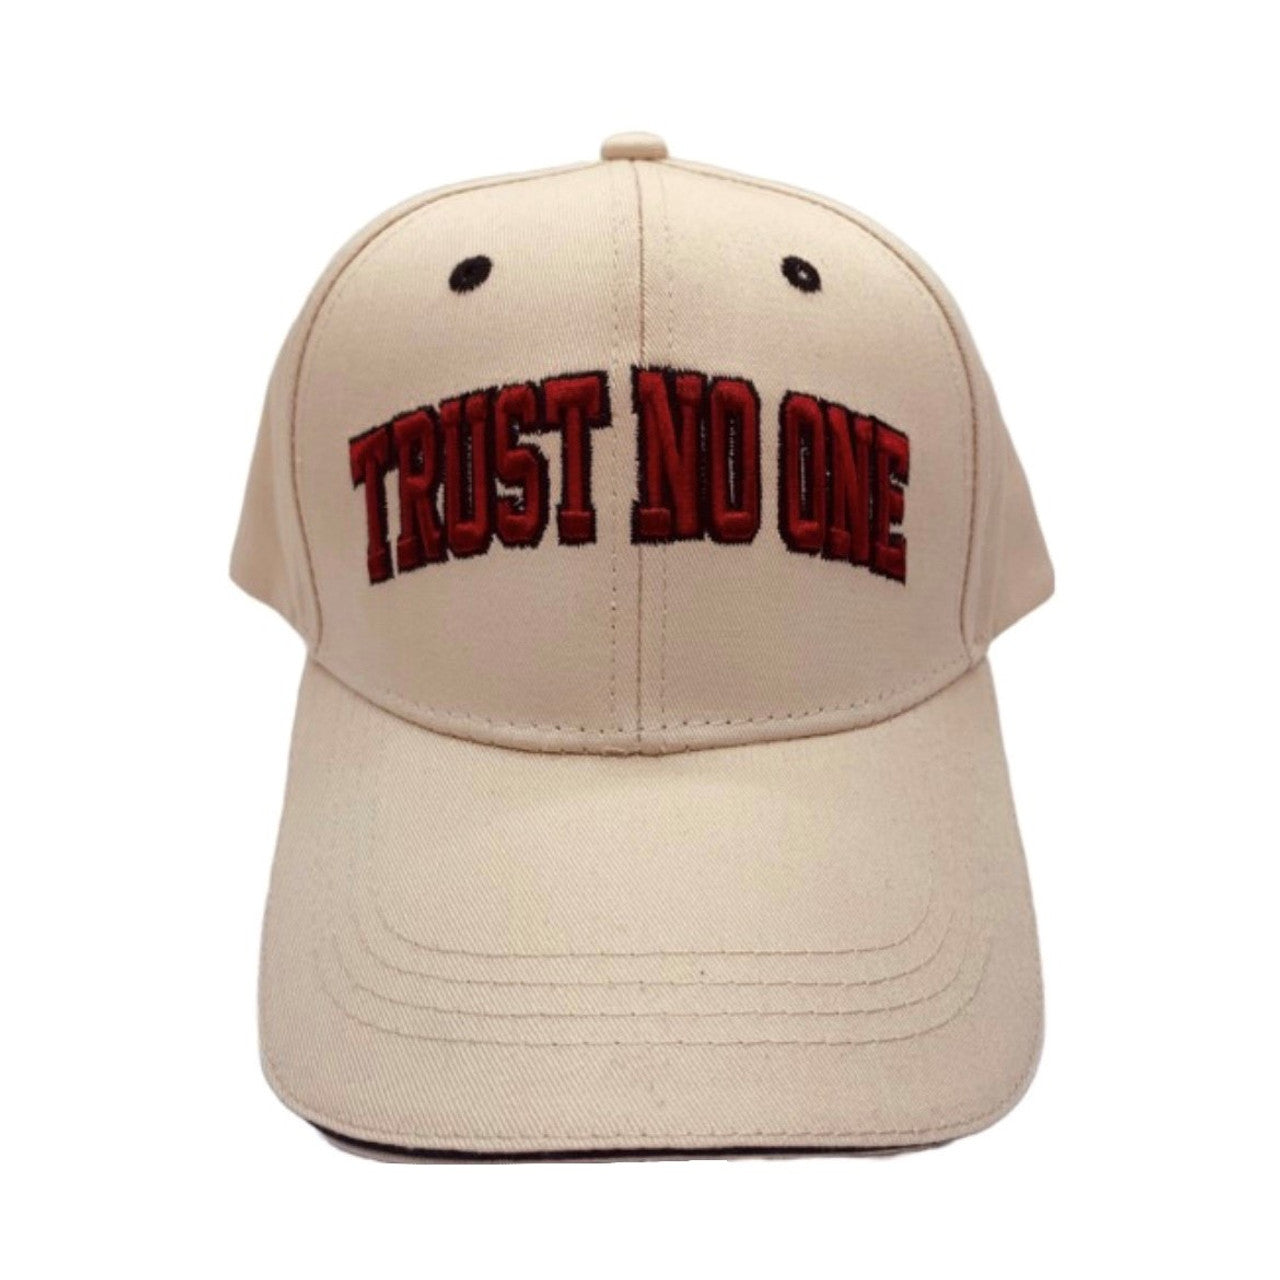 Trust No One Cap